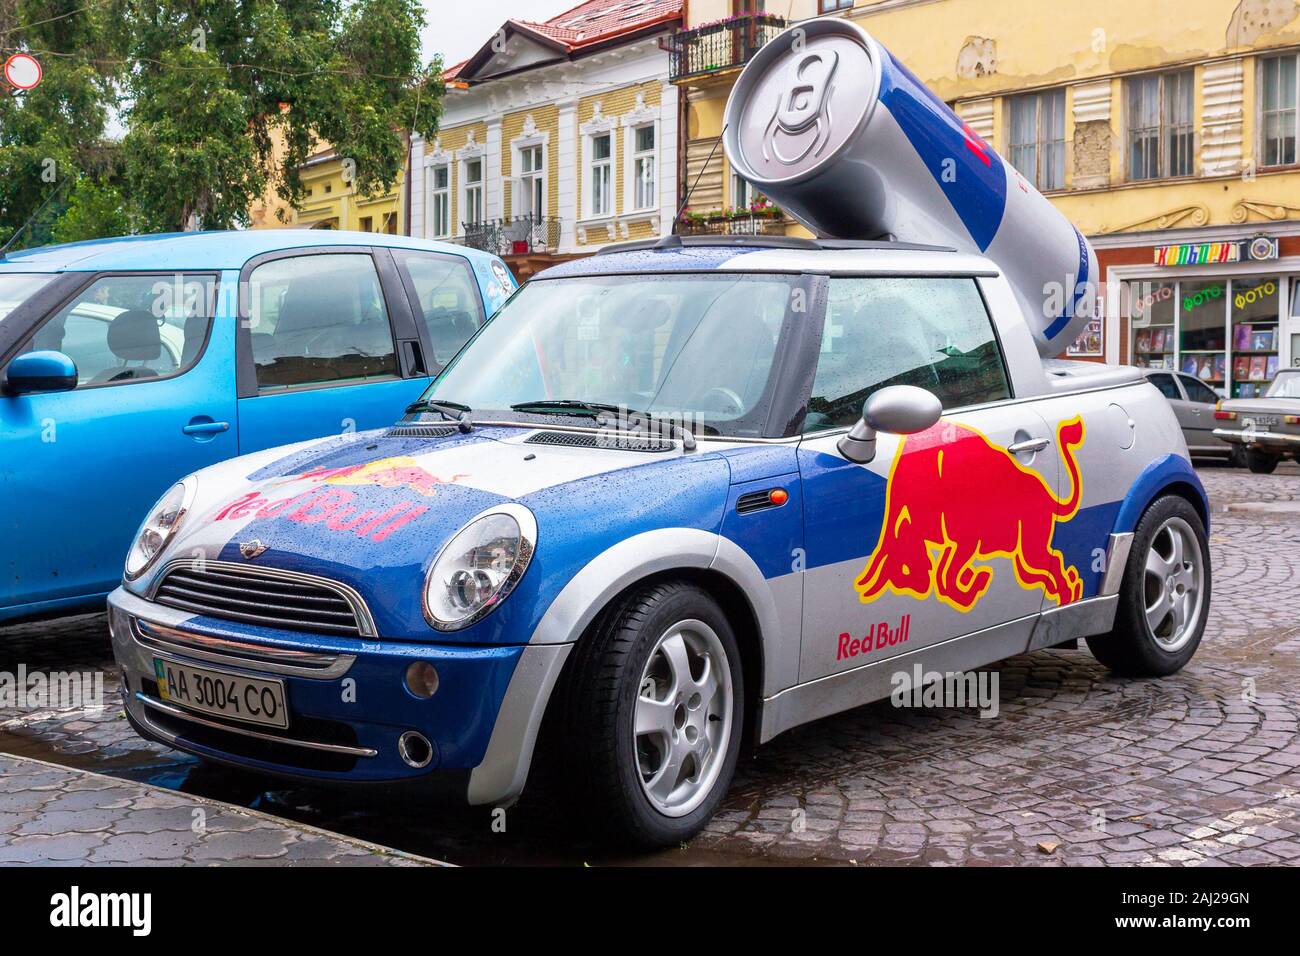 Uzhhorod, Ukraine - 14 août, 2013 : Red Bull Mini cooper voiture publicitaire avec un bidon de boisson énergétique derrière. plaqués car tuning utilisé pour la promotion. wet adver Banque D'Images